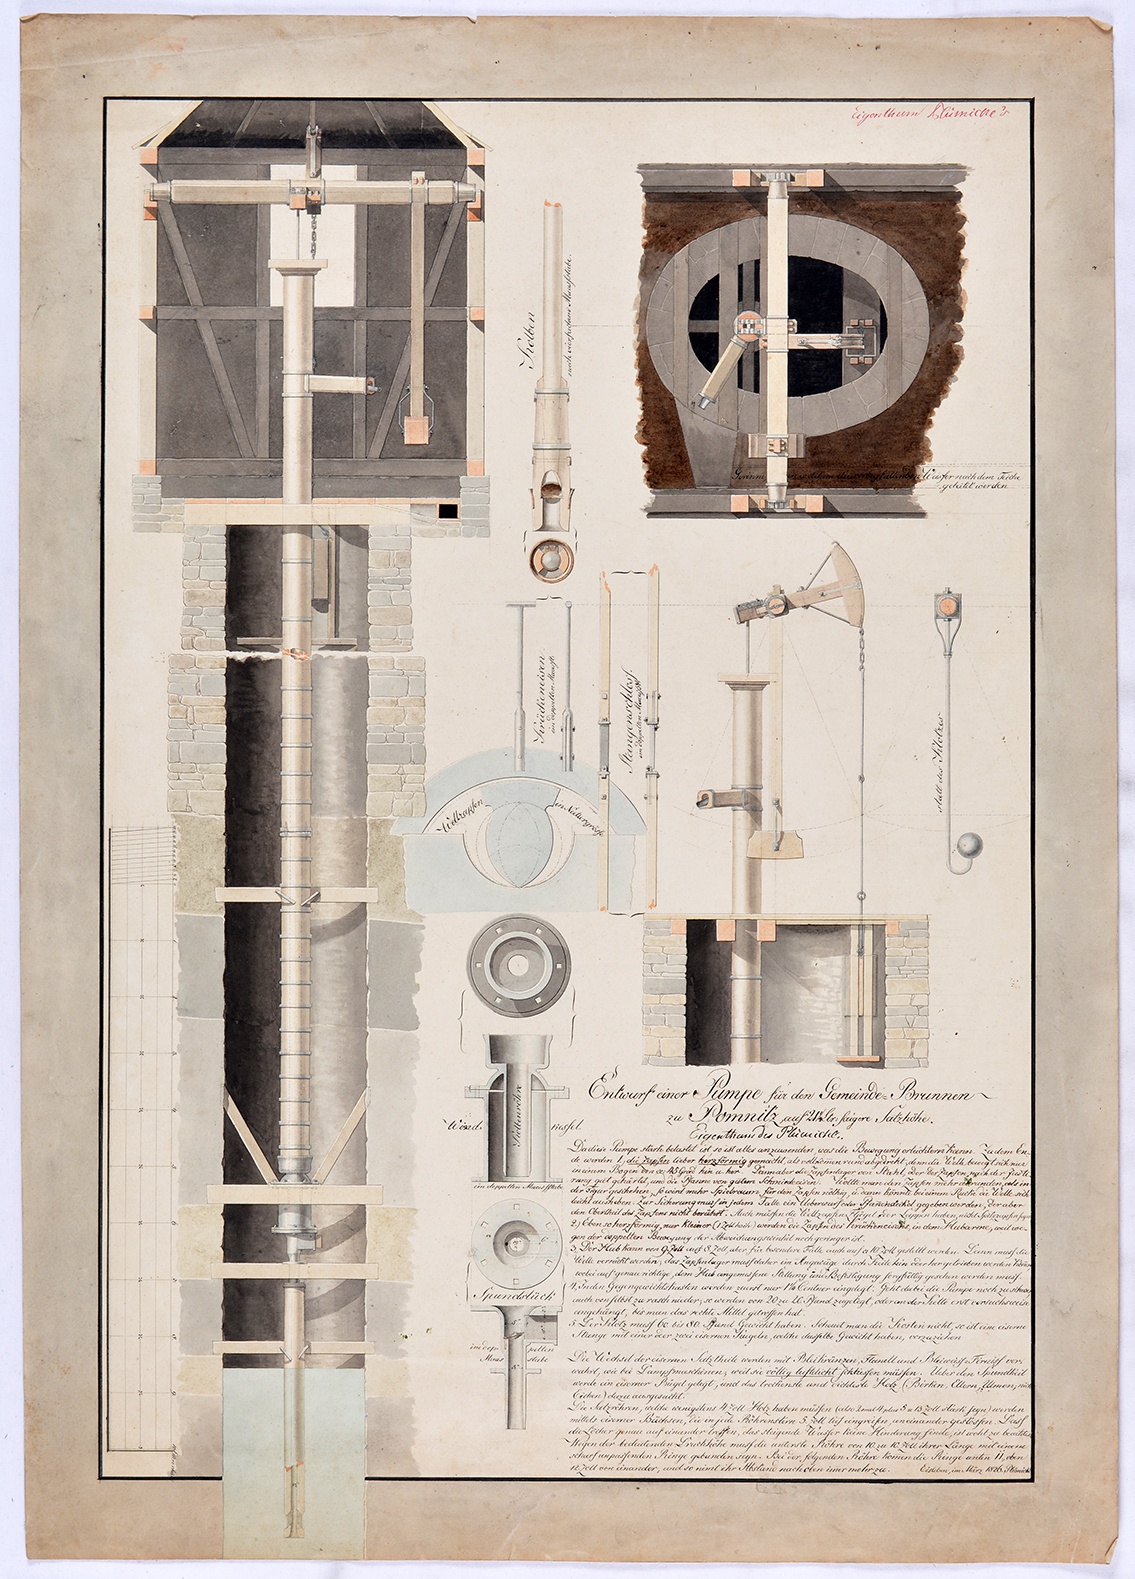 Entwurf einer Pumpe für den Gemeinde-Brunnen zu Pomnitz, auf 21 1/4 Ltr: saigere Satzhöhe. Eigentum des Plümicke. (Mansfeld-Museum im Humboldt-Schloss CC BY-NC-SA)